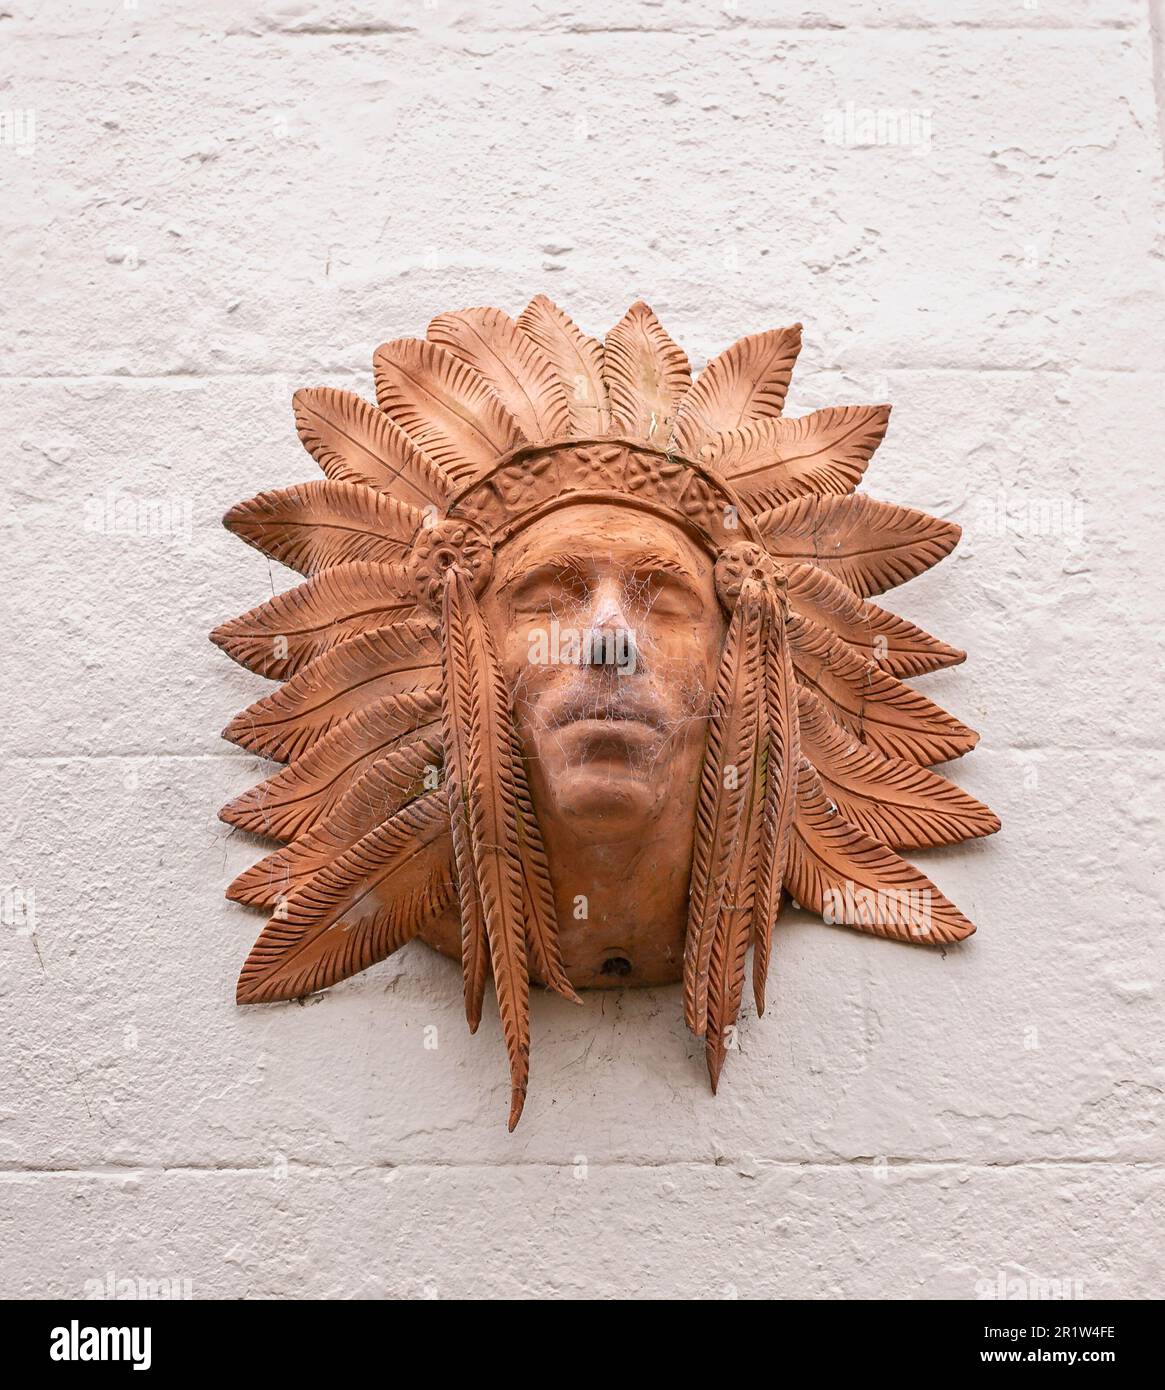 Gros plan de la sculpture en argile de la tête indienne rouge avec une coiffe en plumes sur le mur à Whitby, dans le Yorkshire, au Royaume-Uni, le 22 mai 2018 Banque D'Images